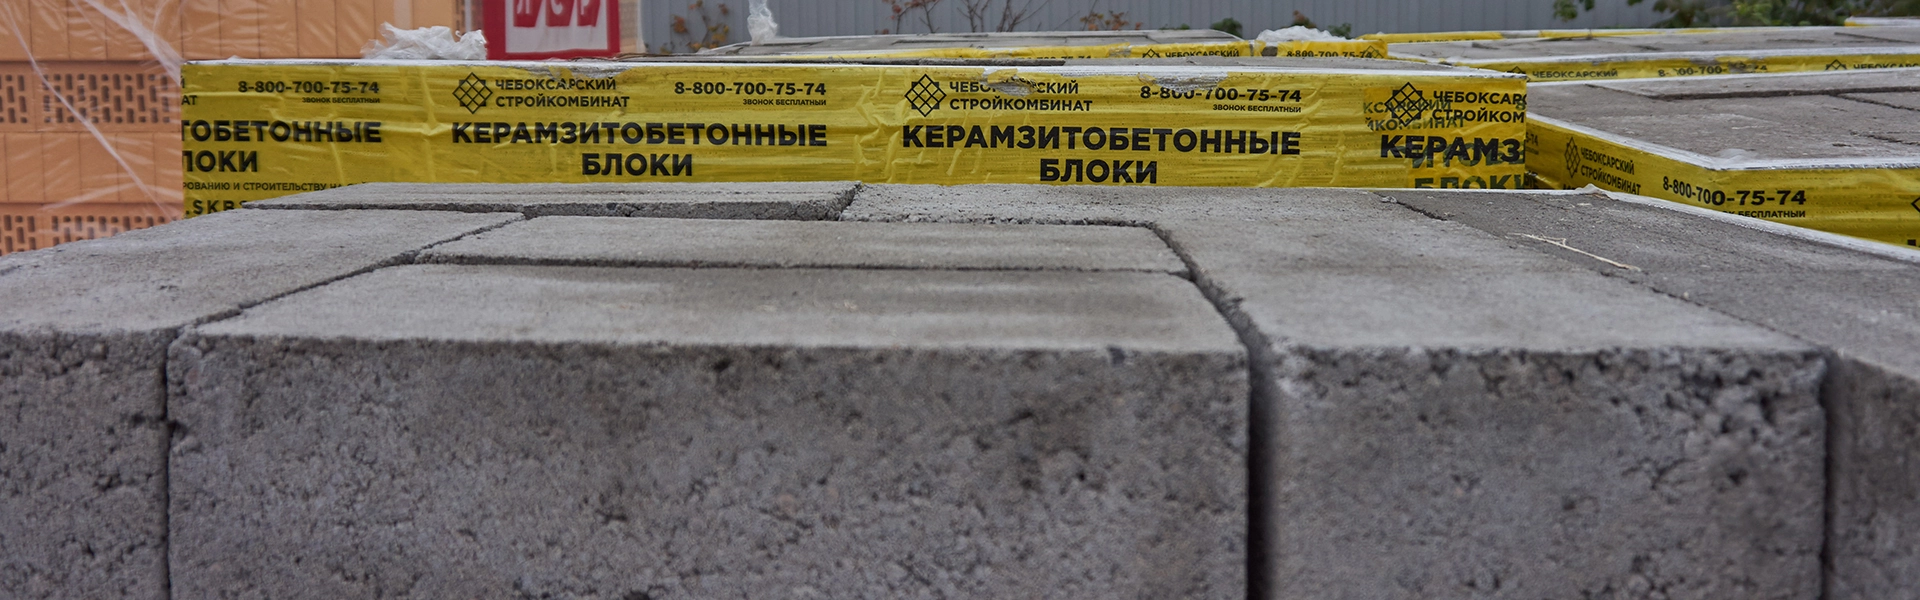 Керамзитобетонные блоки в Казани по низким ценам